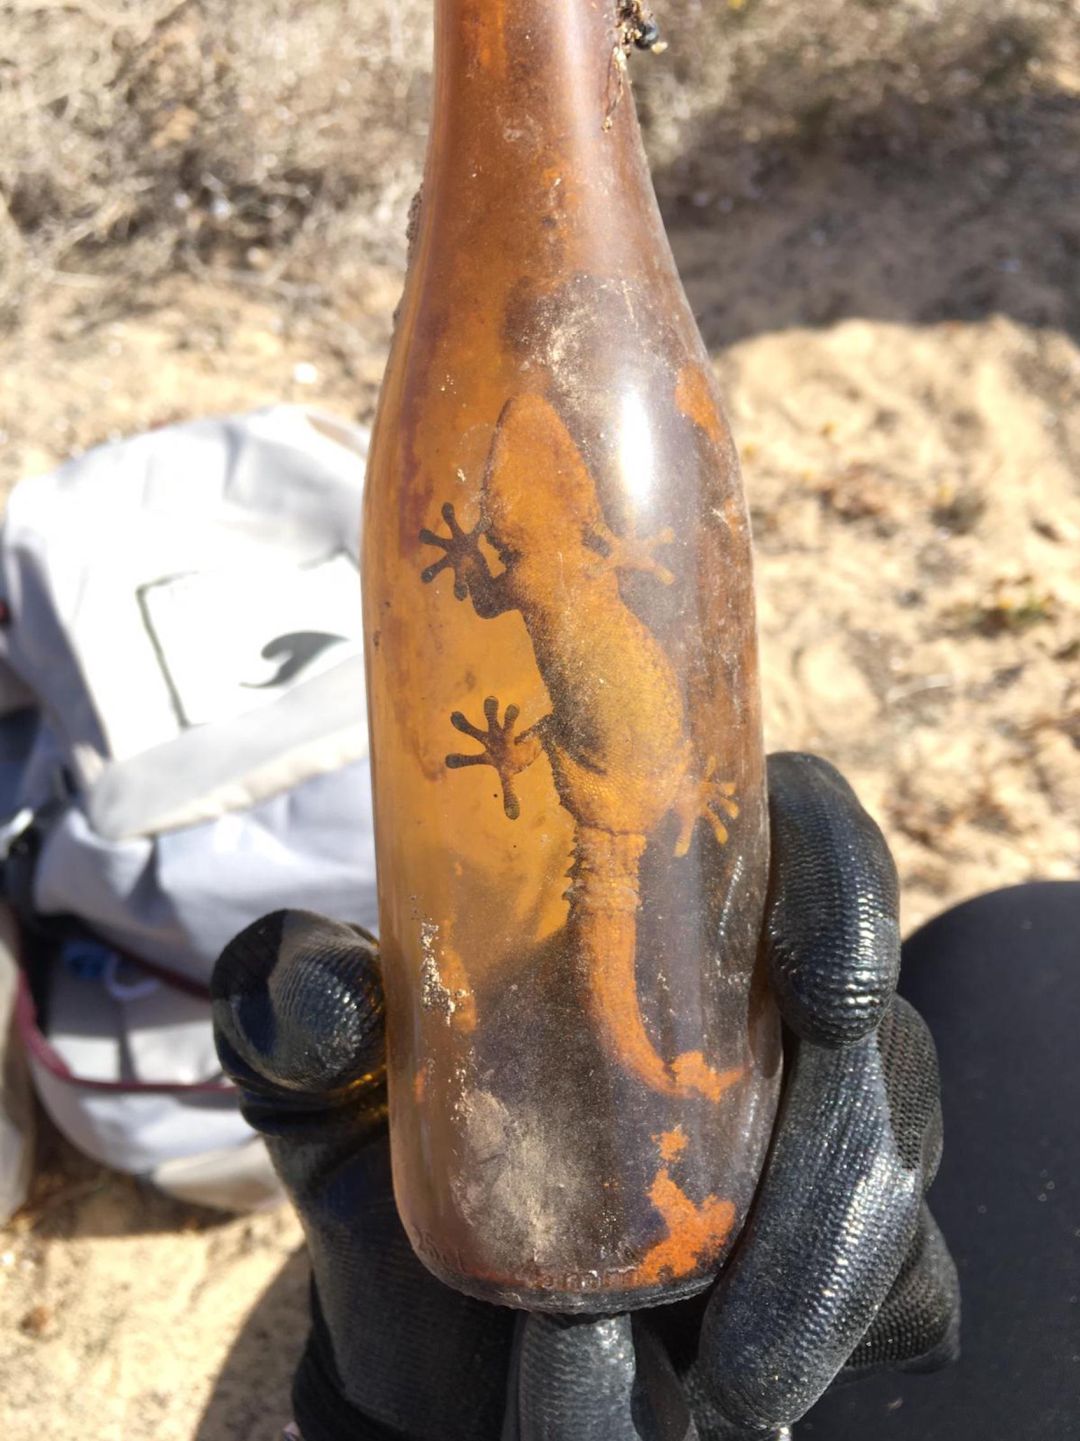 Un perenquén atrapado en el interior de una botella de vidrio hallada en el desierto de El Jable en Lanzarote